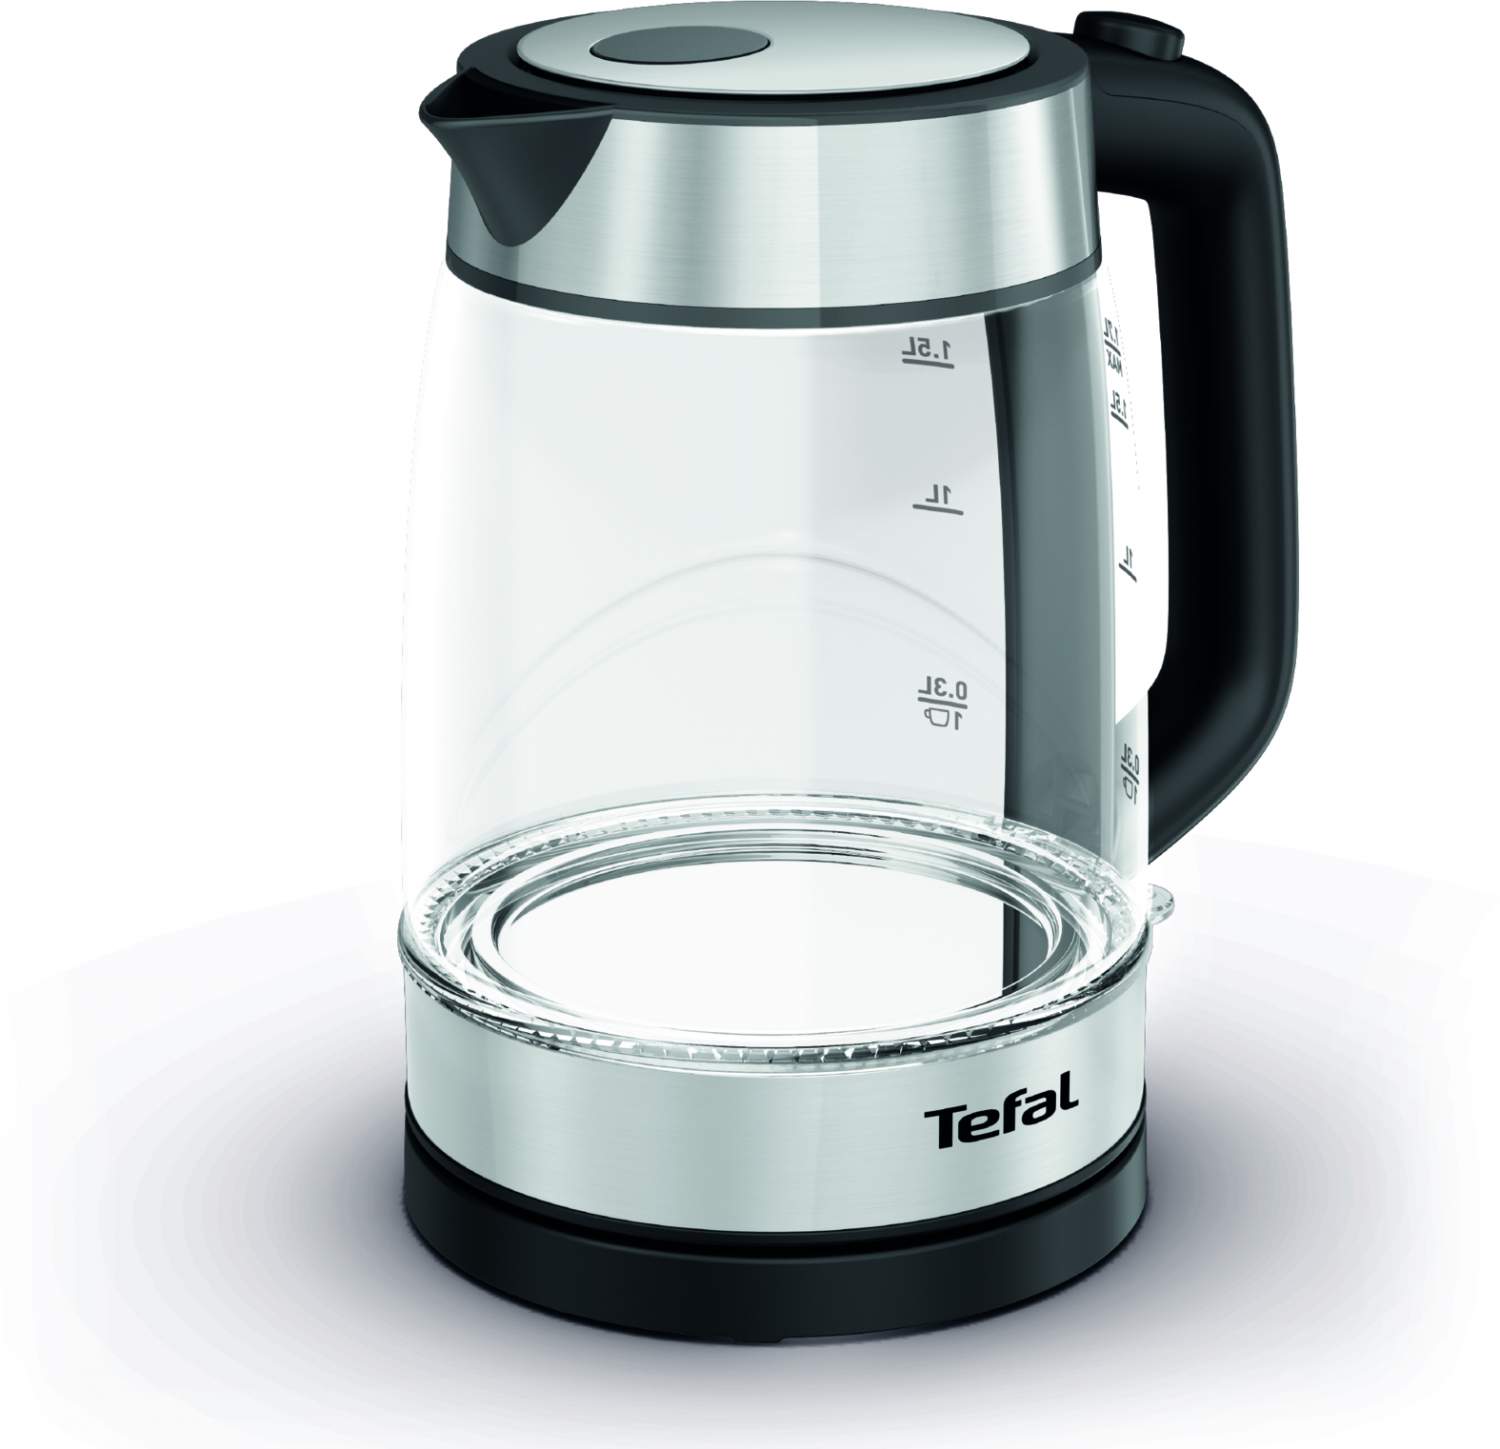  Tefal (Тефаль) -  чайник Тефаль электрический, цены на .